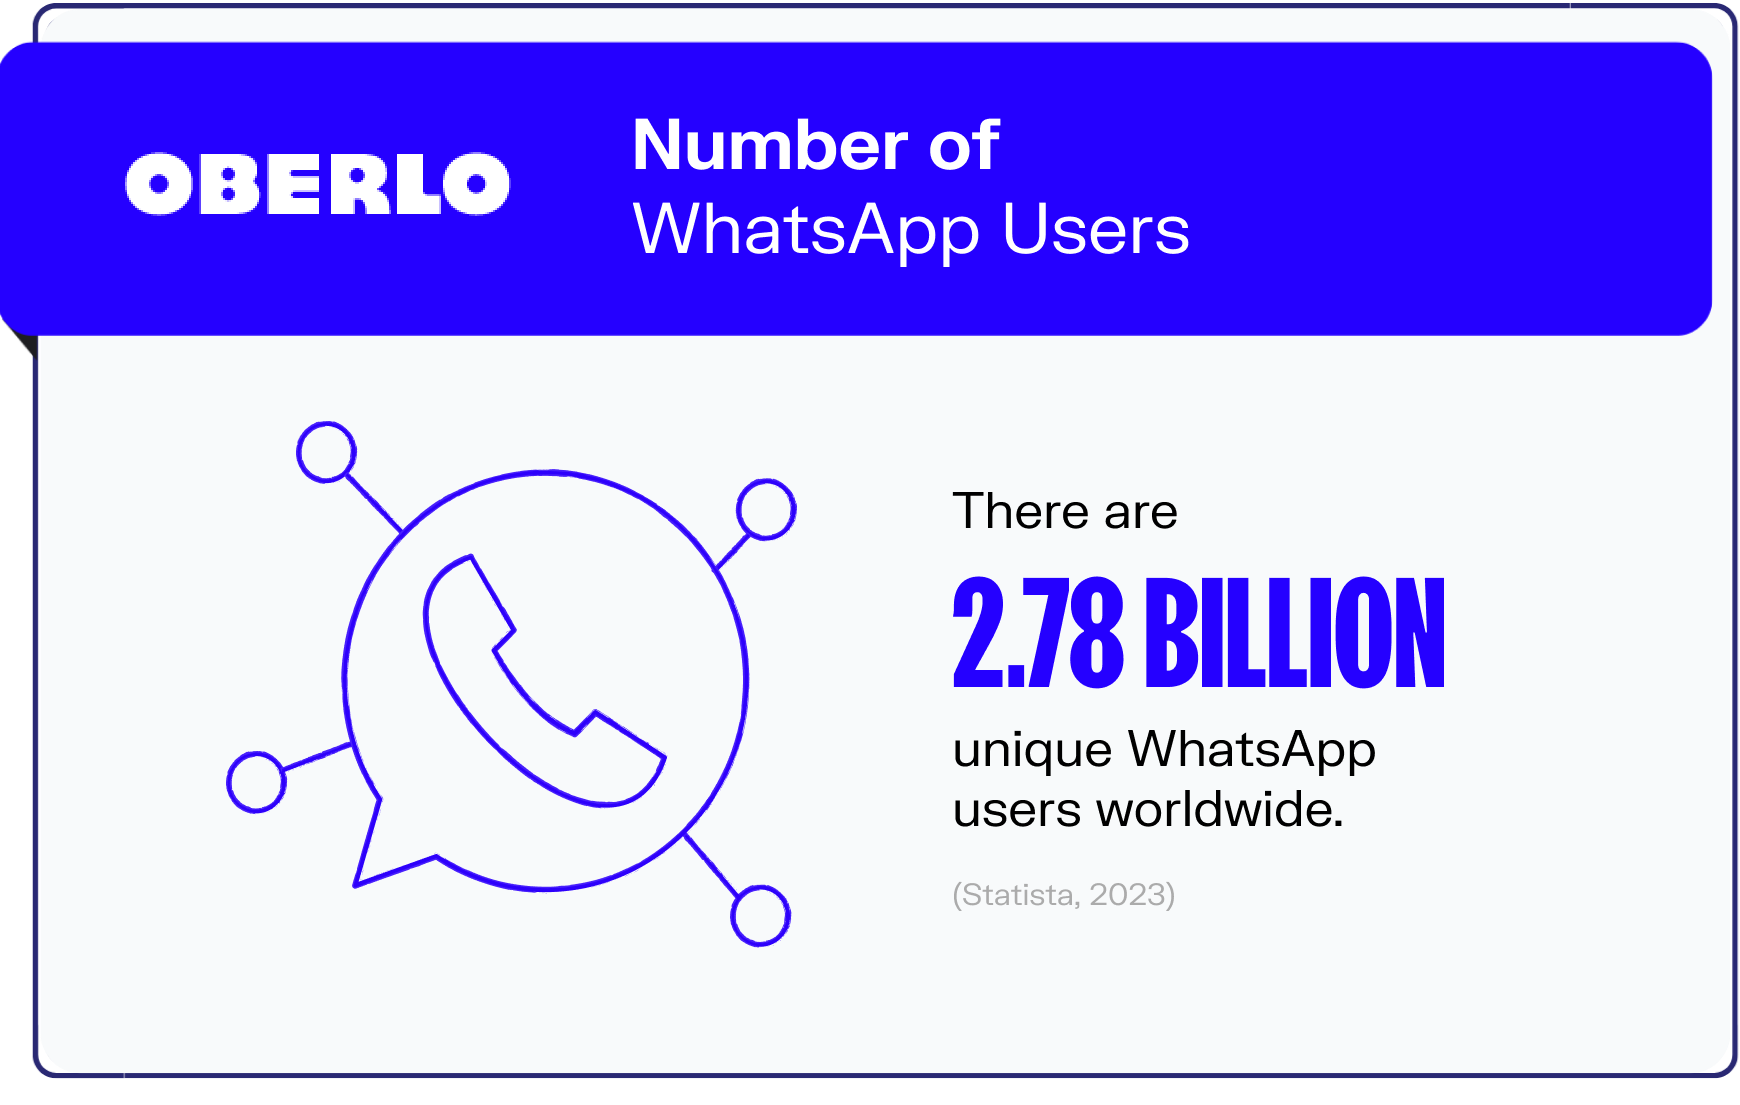 whatsapp statistics graphic1